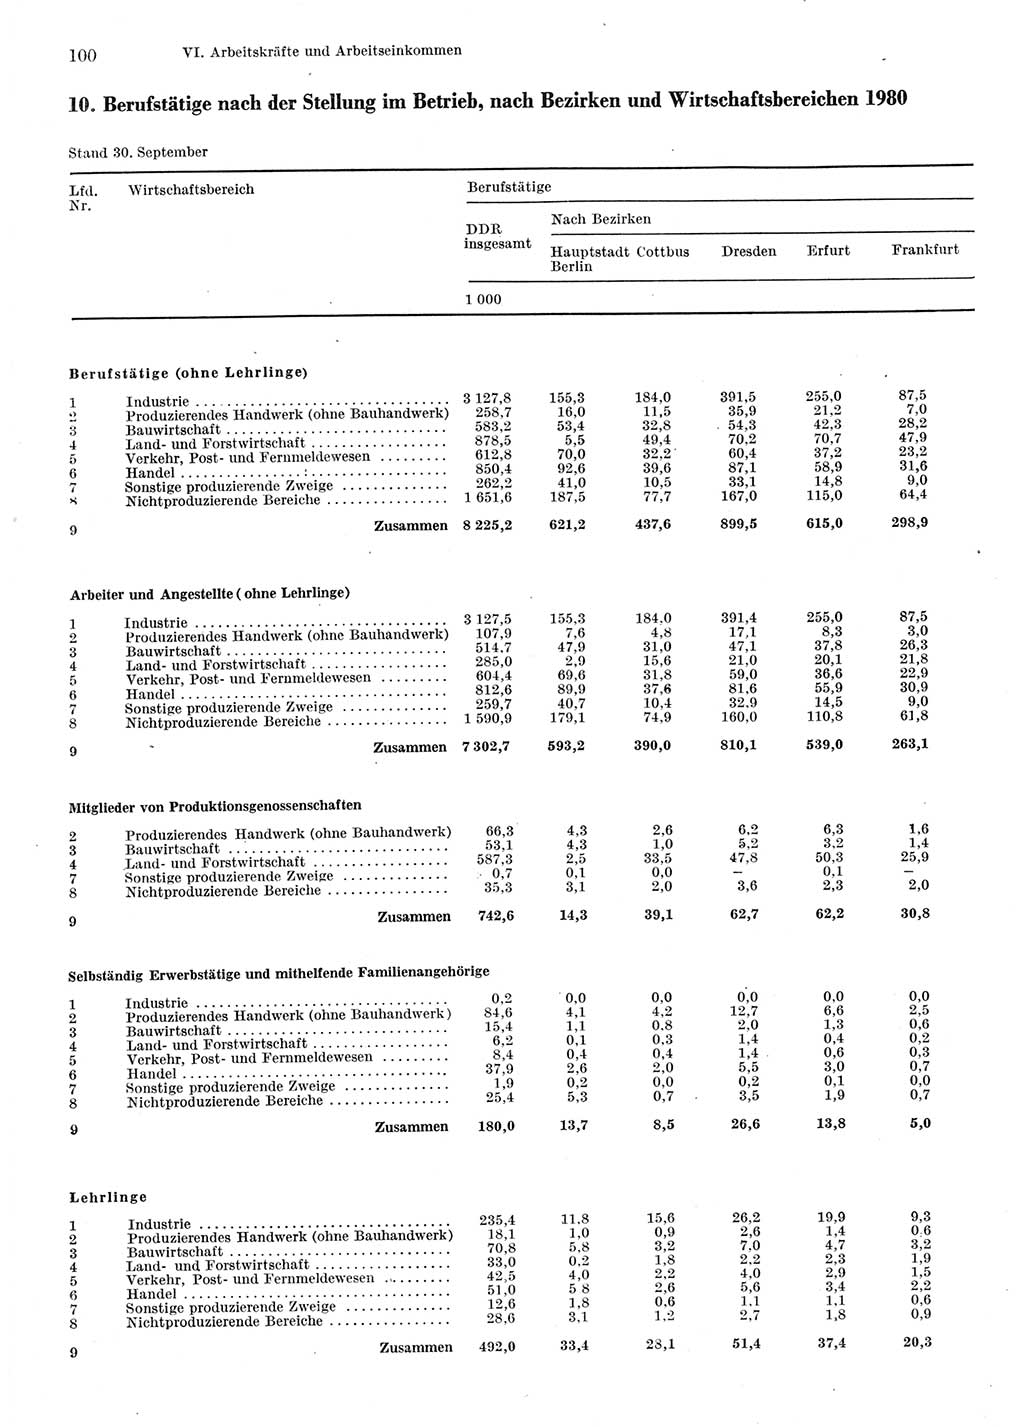 Statistisches Jahrbuch der Deutschen Demokratischen Republik (DDR) 1981, Seite 100 (Stat. Jb. DDR 1981, S. 100)